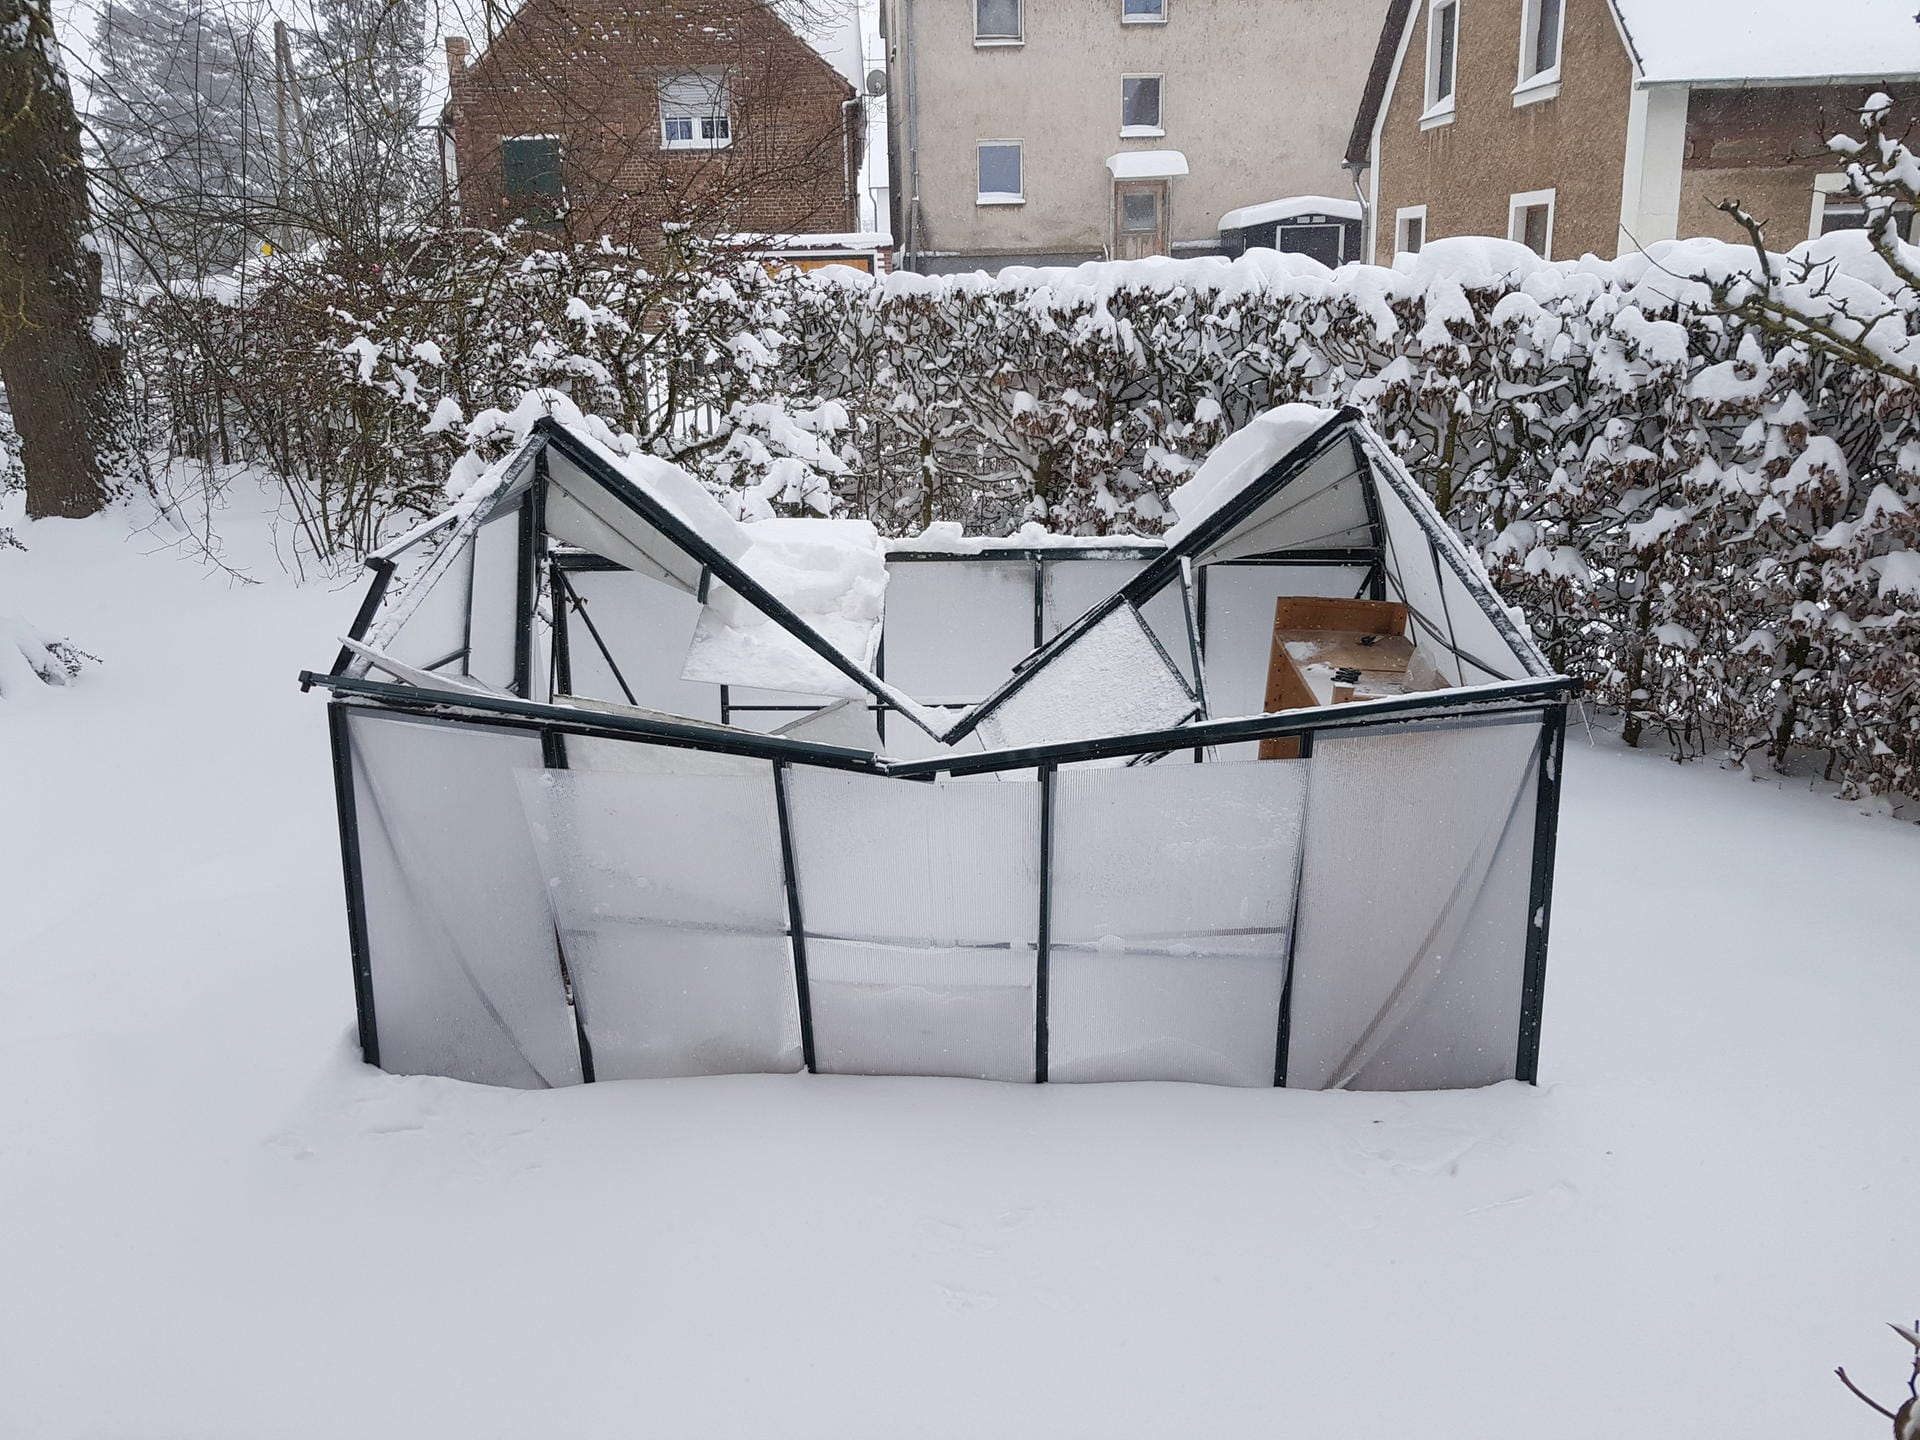 Detlev Kleemann aus Marsberg in Nordrhein-Westfalen hat durch den Wintereinbruch leider einen Verlust zu beklagen. Sein schönes Gewächshaus ist unter der schweren Last des Schnees zusammengebrochen.